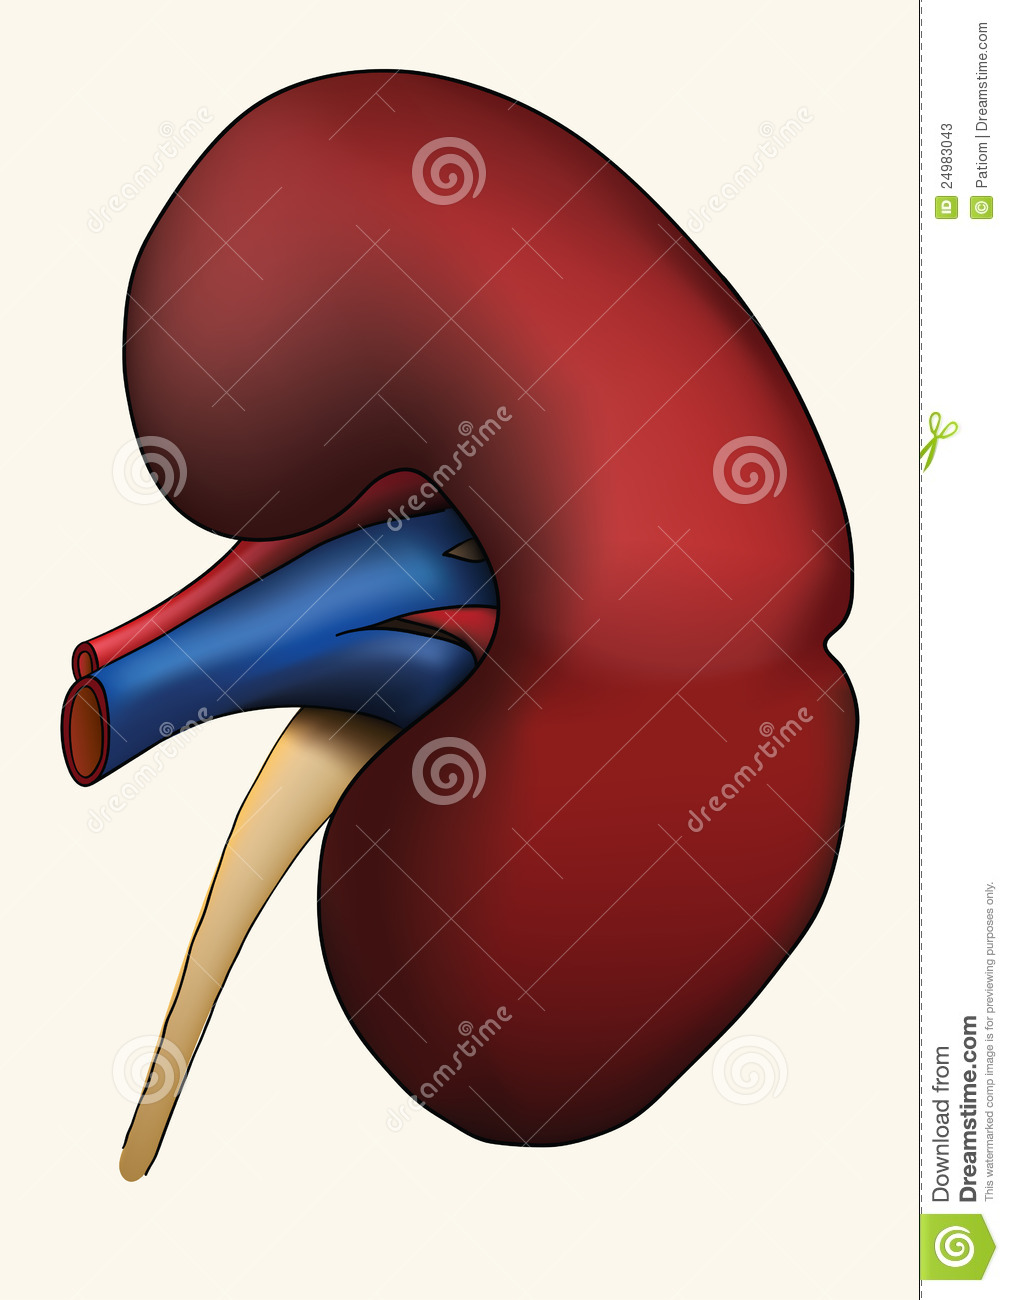 Kidney Bean Clip Art For Pinterest